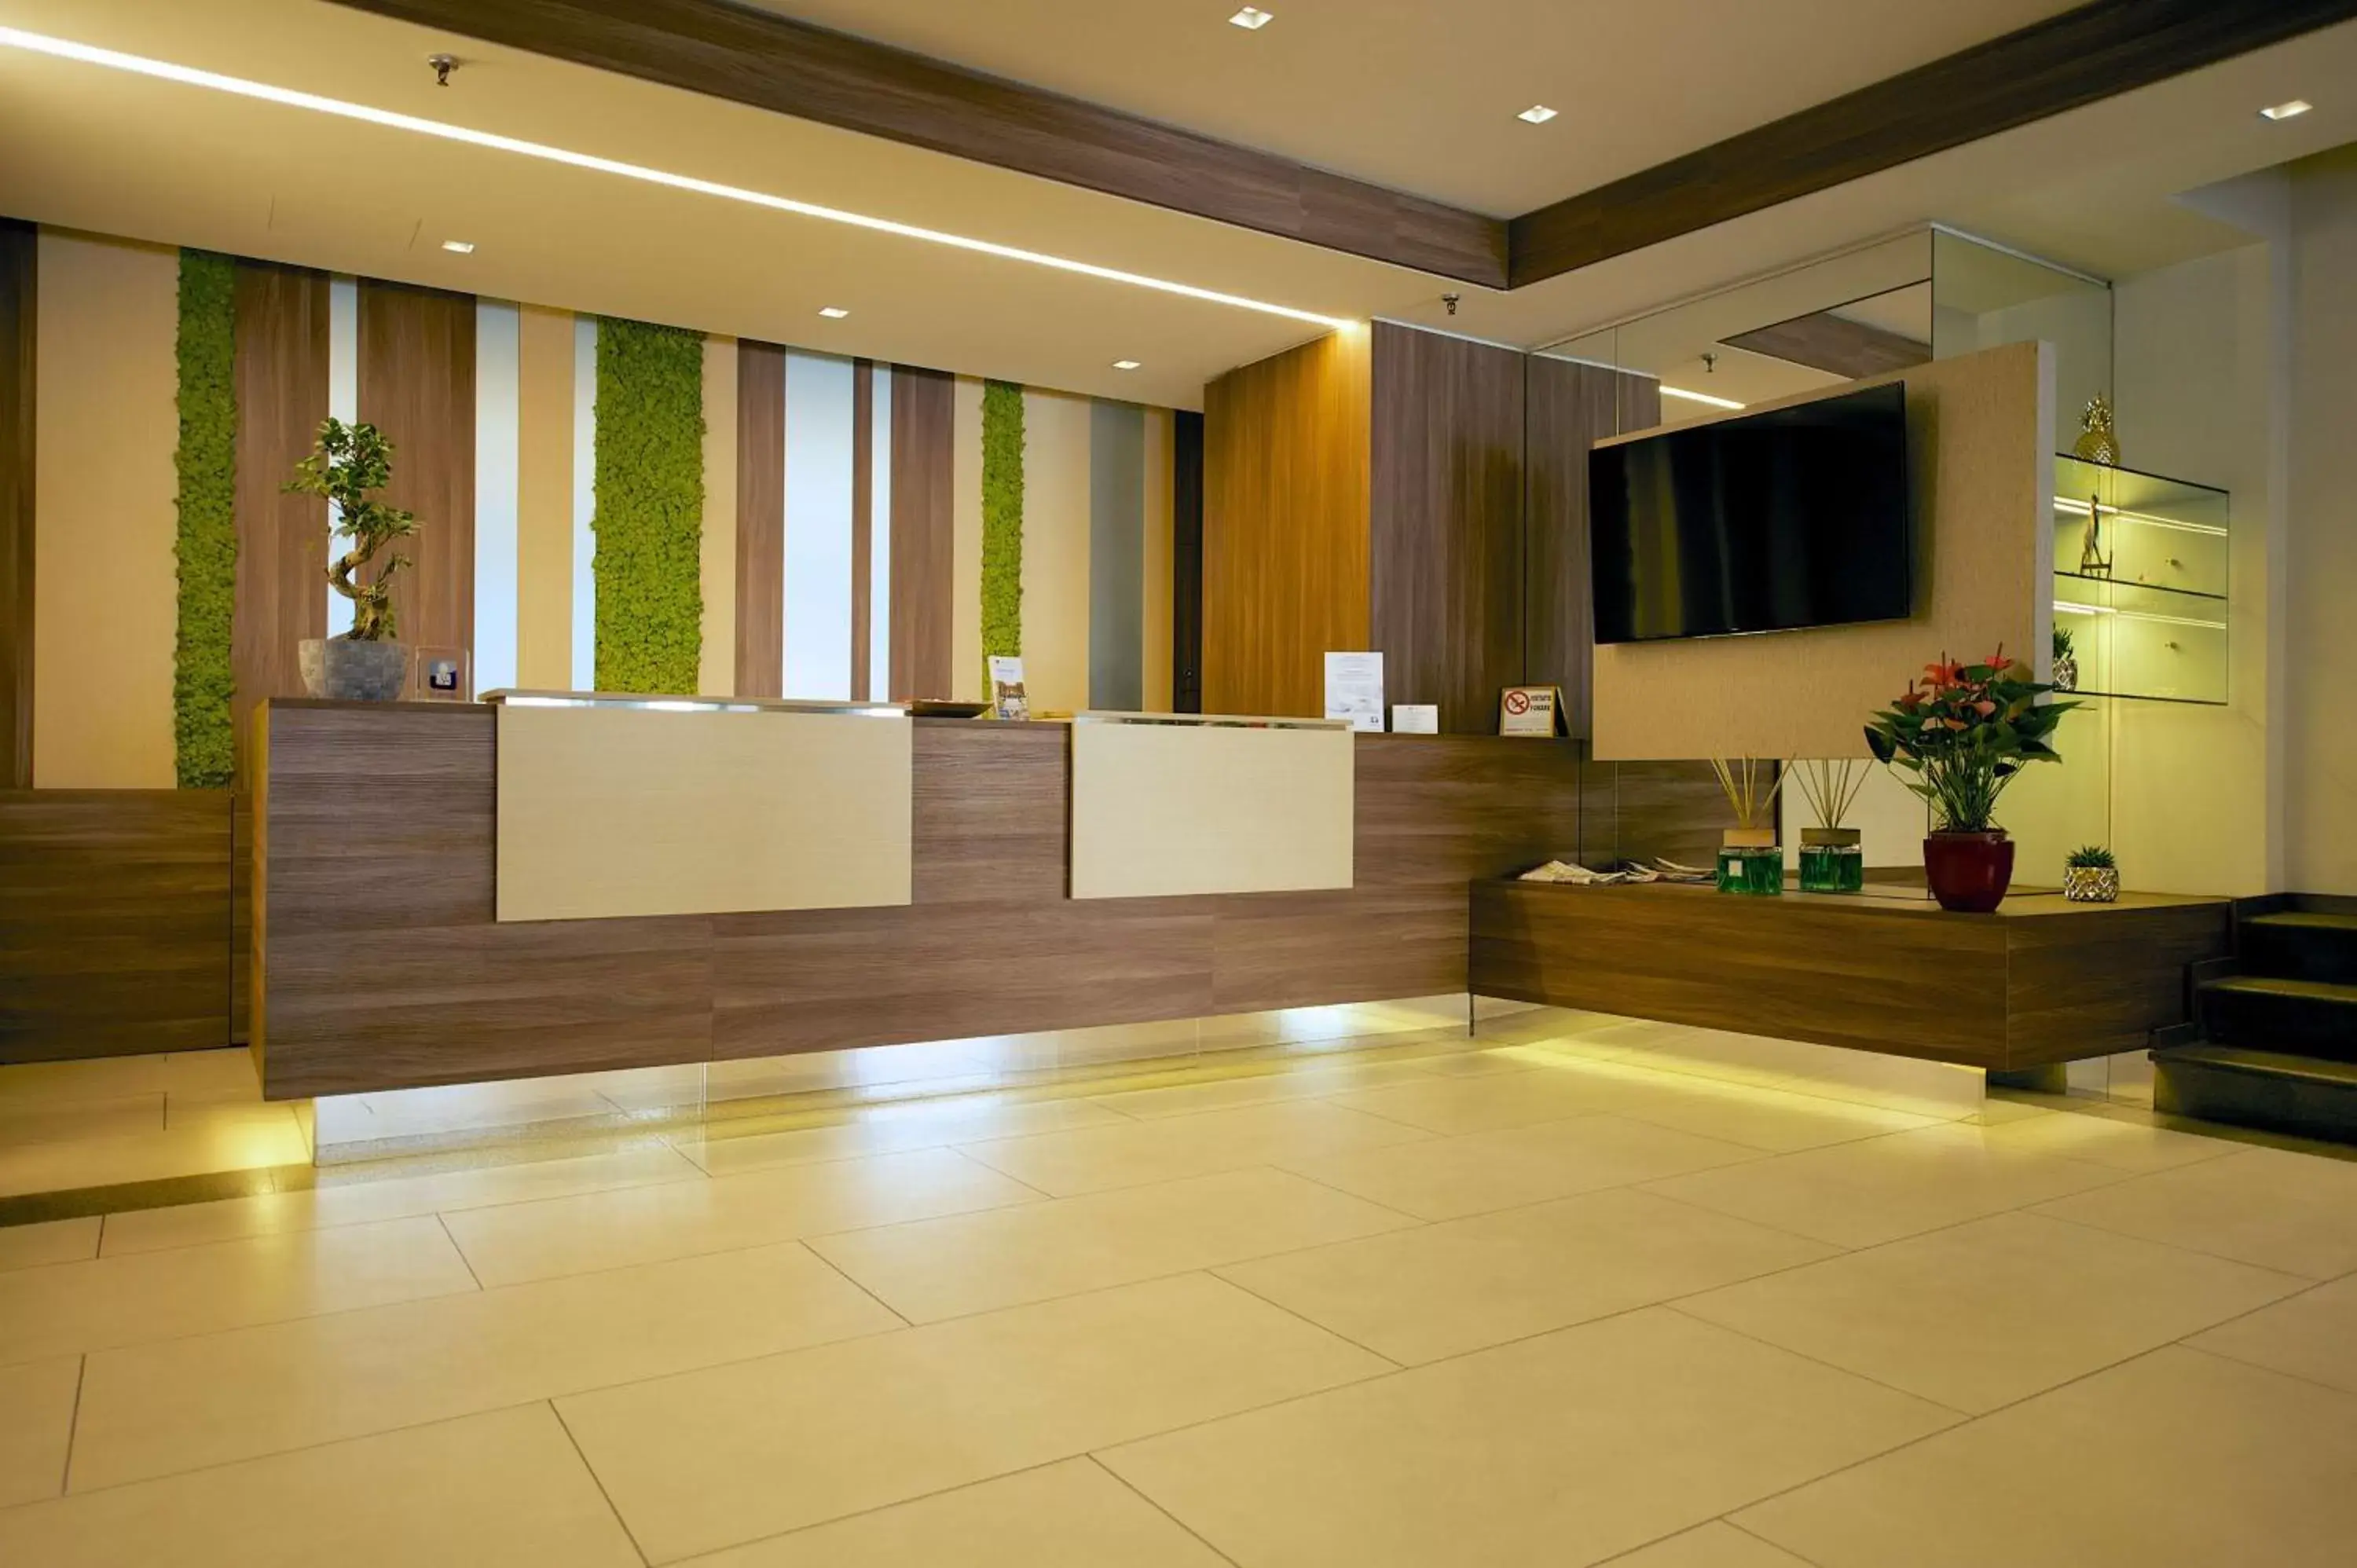 Lobby or reception, Lobby/Reception in Best Western Hotel Luxor